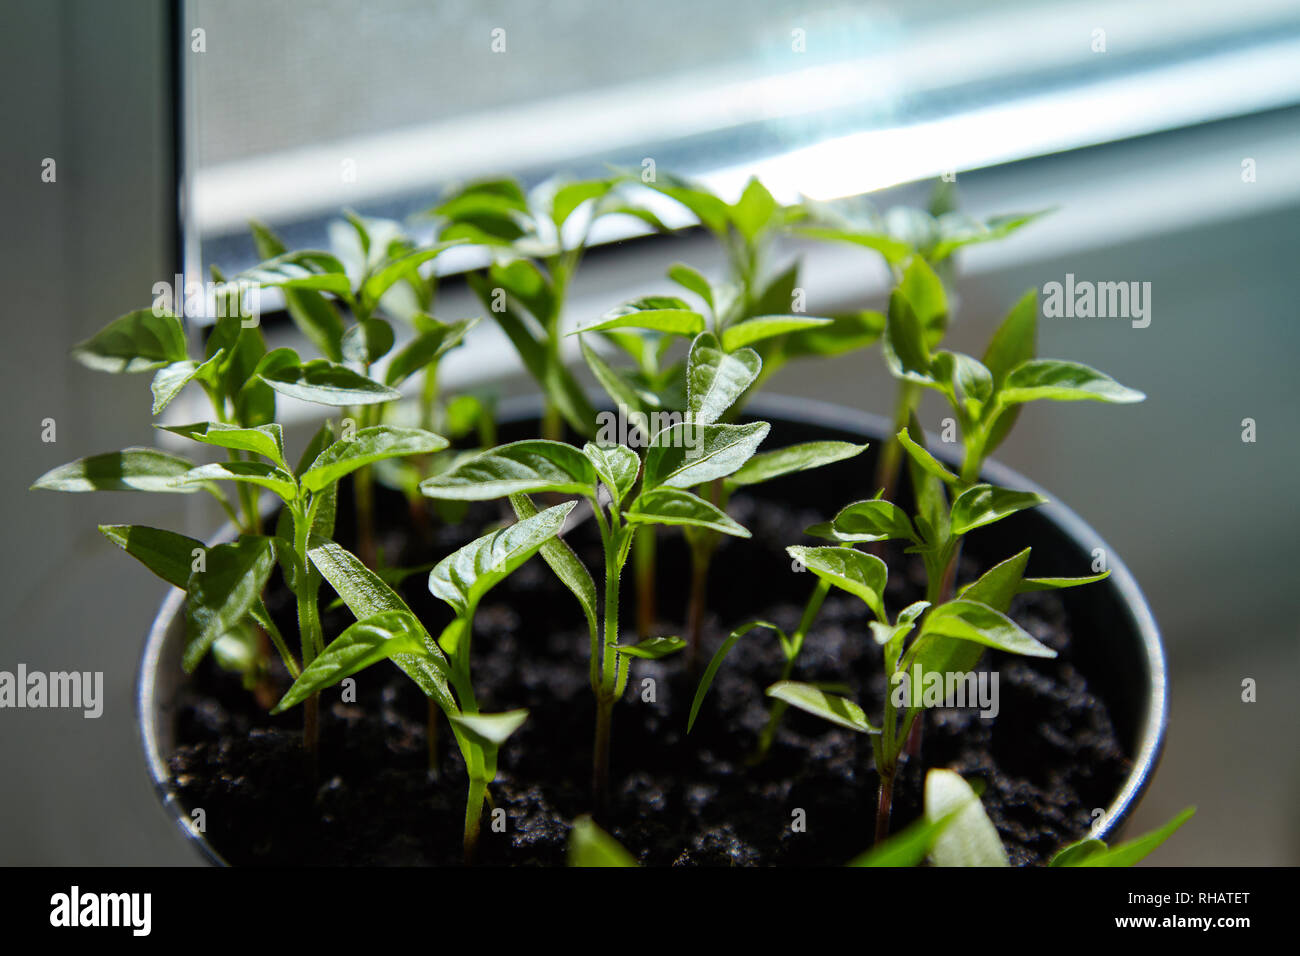 Sämling von Paprika. Junge grüne Paprika mit Blätter wachsen Pflanzen aus Samen im Boden in Kästen auf Fensterbänke Innen. Topfpflanzen Paprika Keimlinge Grün Le Stockfoto